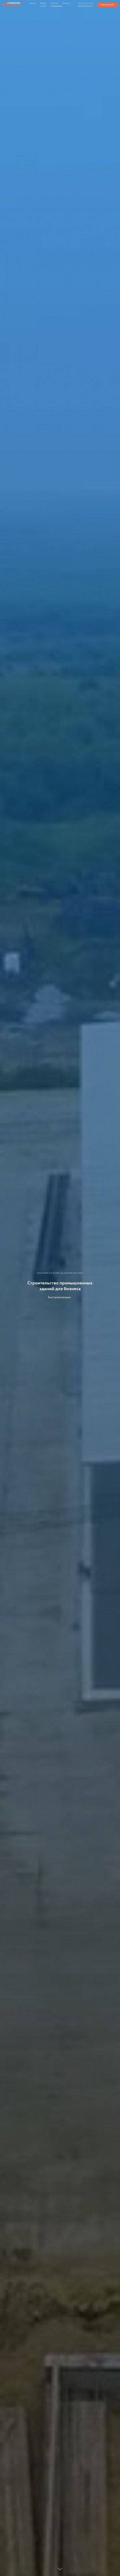 Предпросмотр для metalangar.ru — СтройАктив Максимум